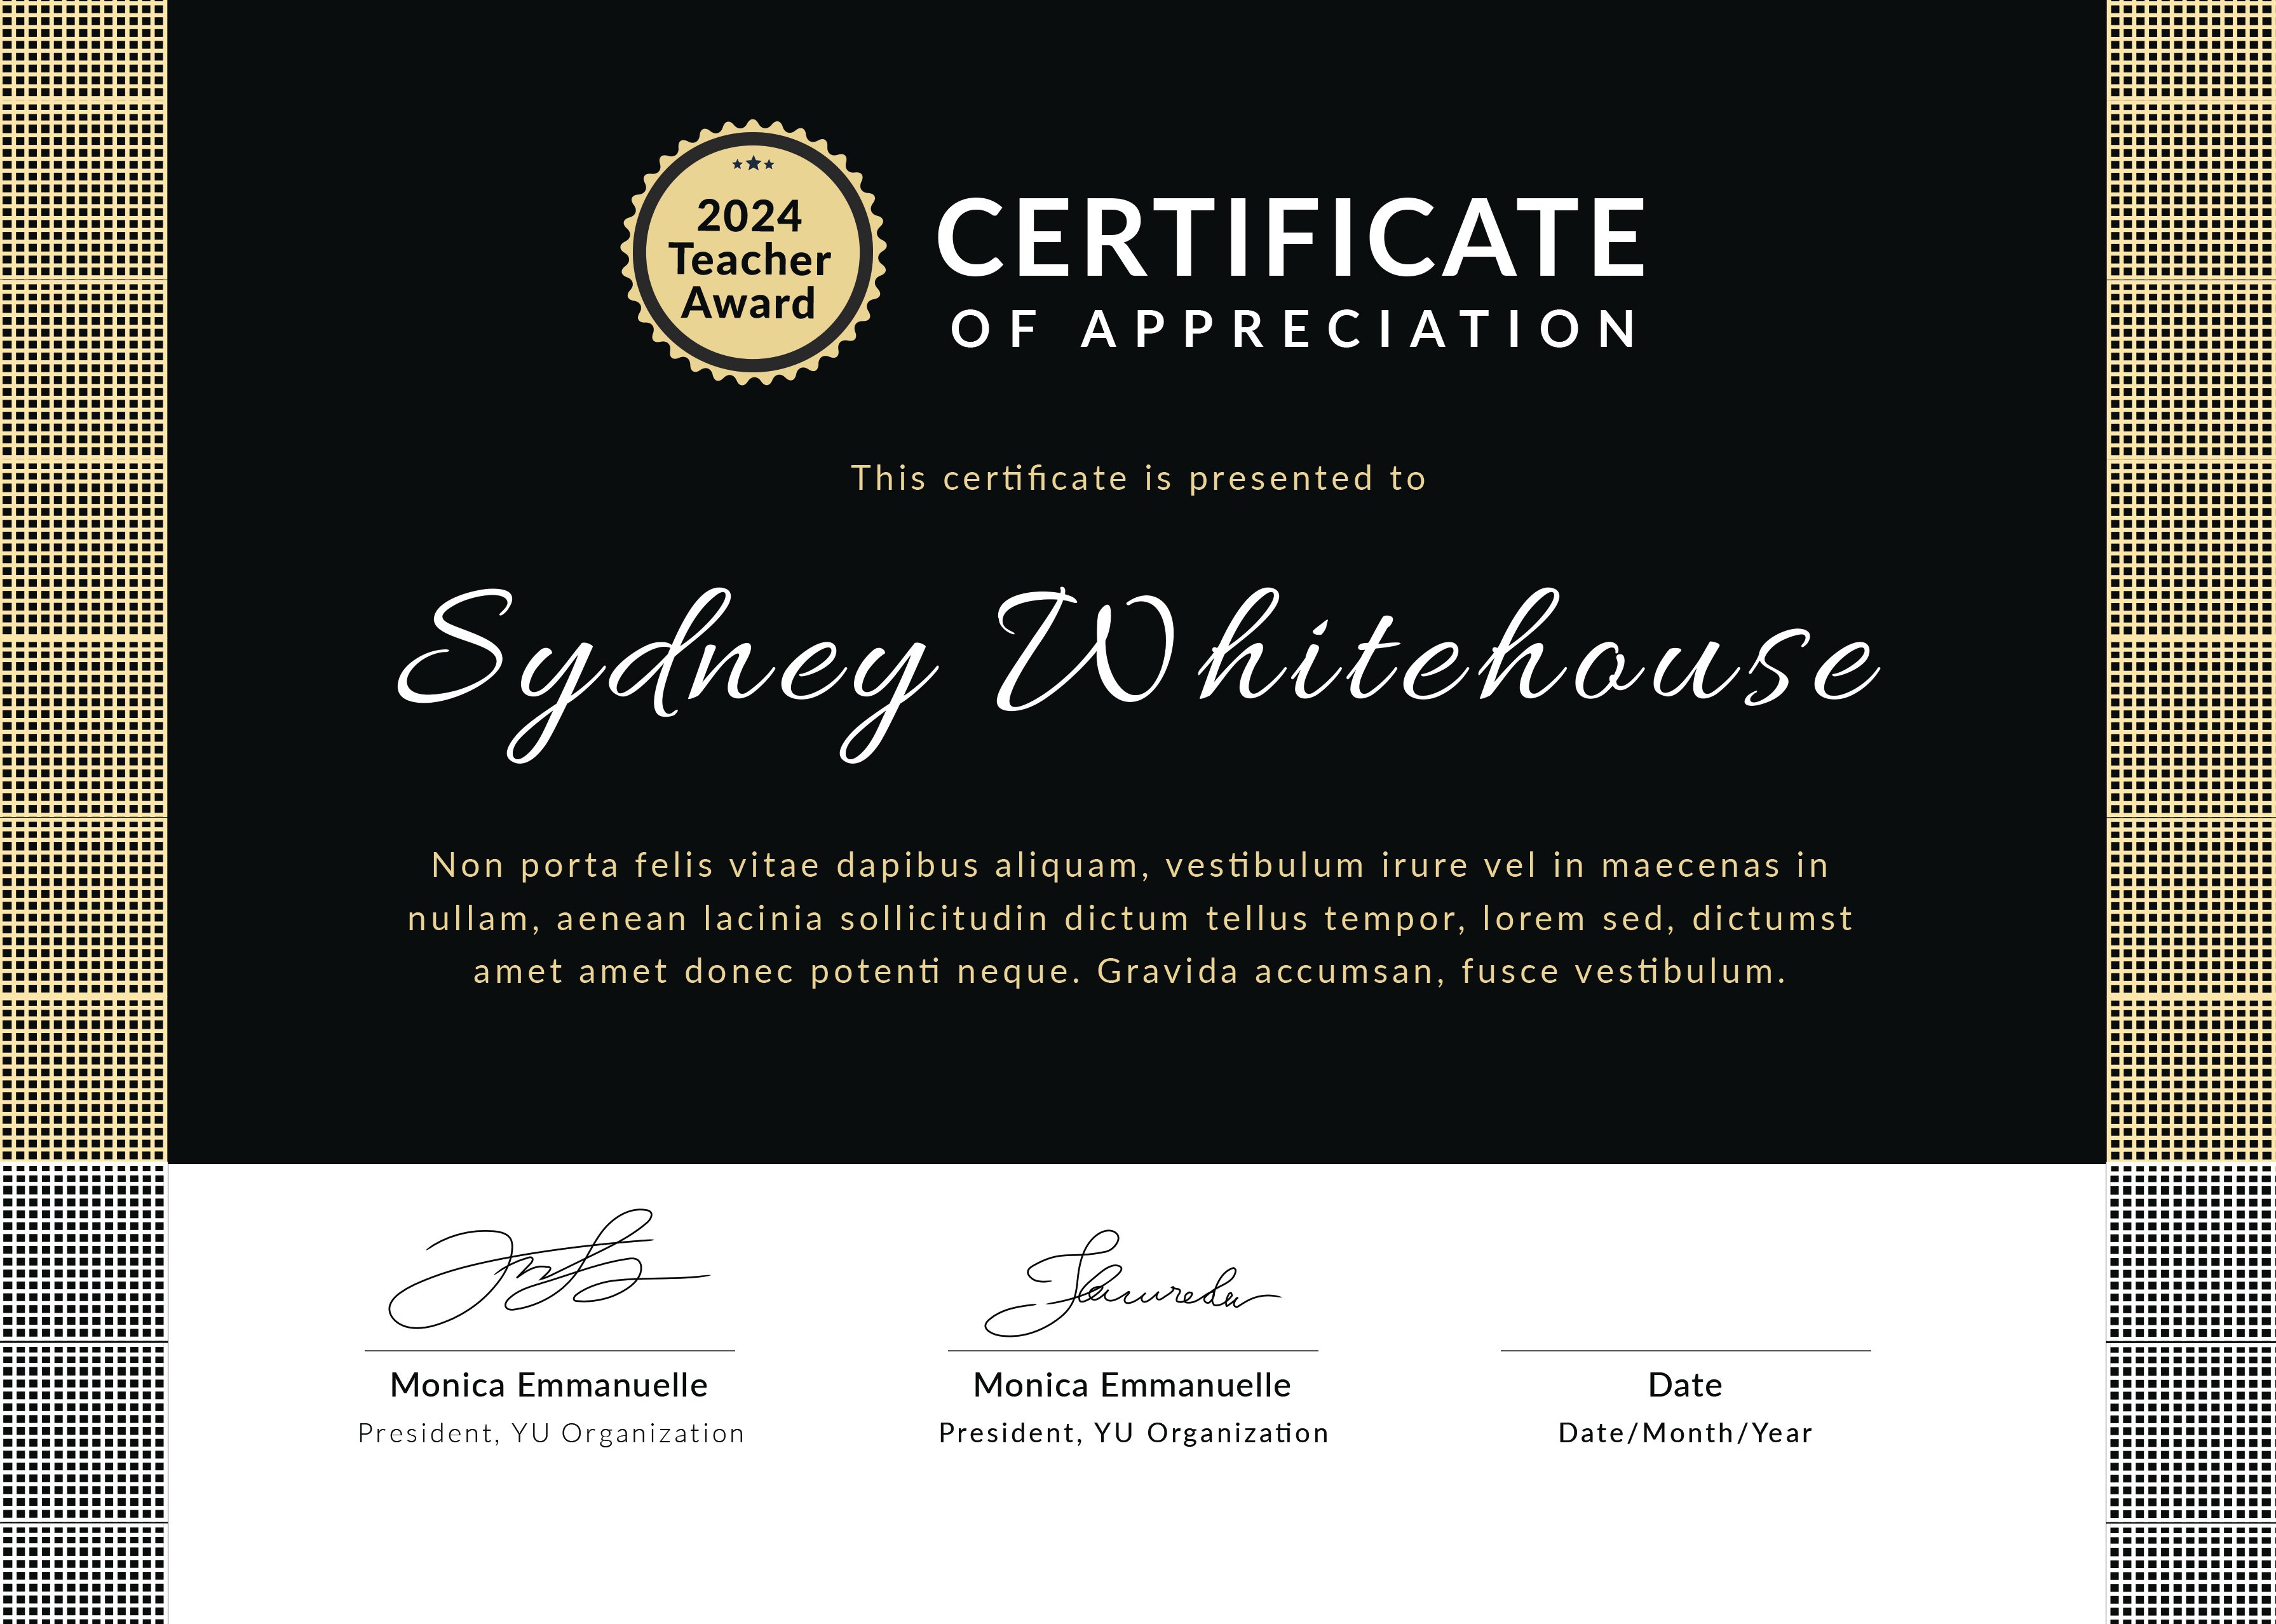 Free Teacher Appreciation Certificate Template in Adobe